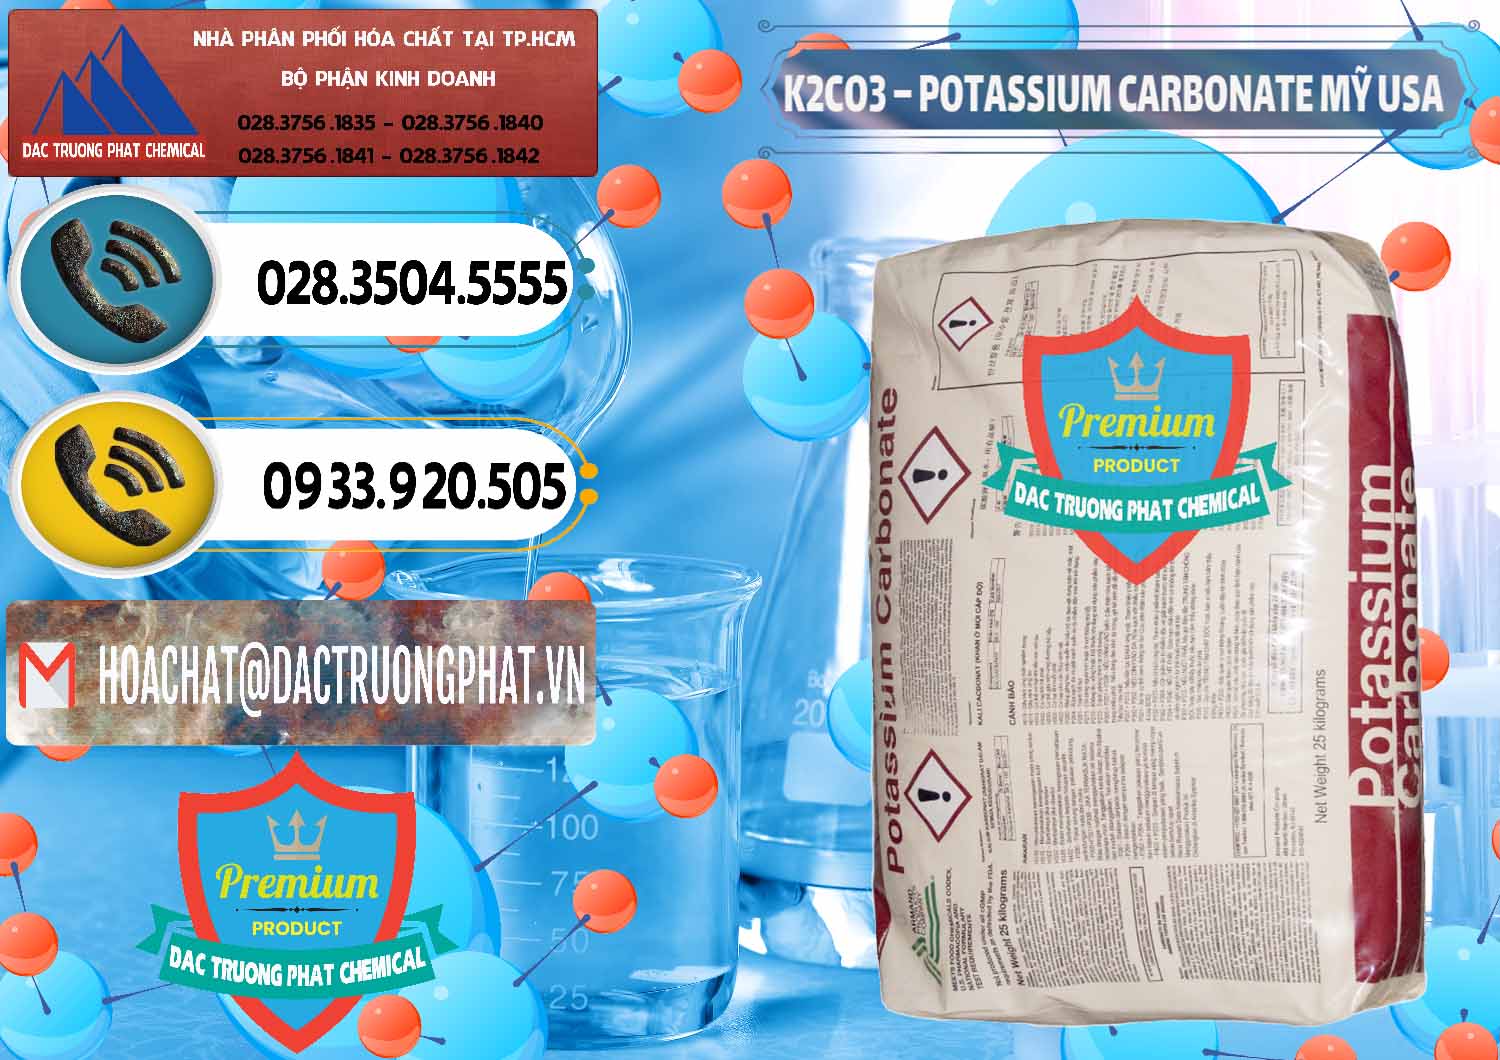 Đơn vị cung ứng _ bán K2Co3 – Potassium Carbonate Mỹ USA - 0082 - Nhà cung cấp và bán hóa chất tại TP.HCM - hoachatdetnhuom.vn